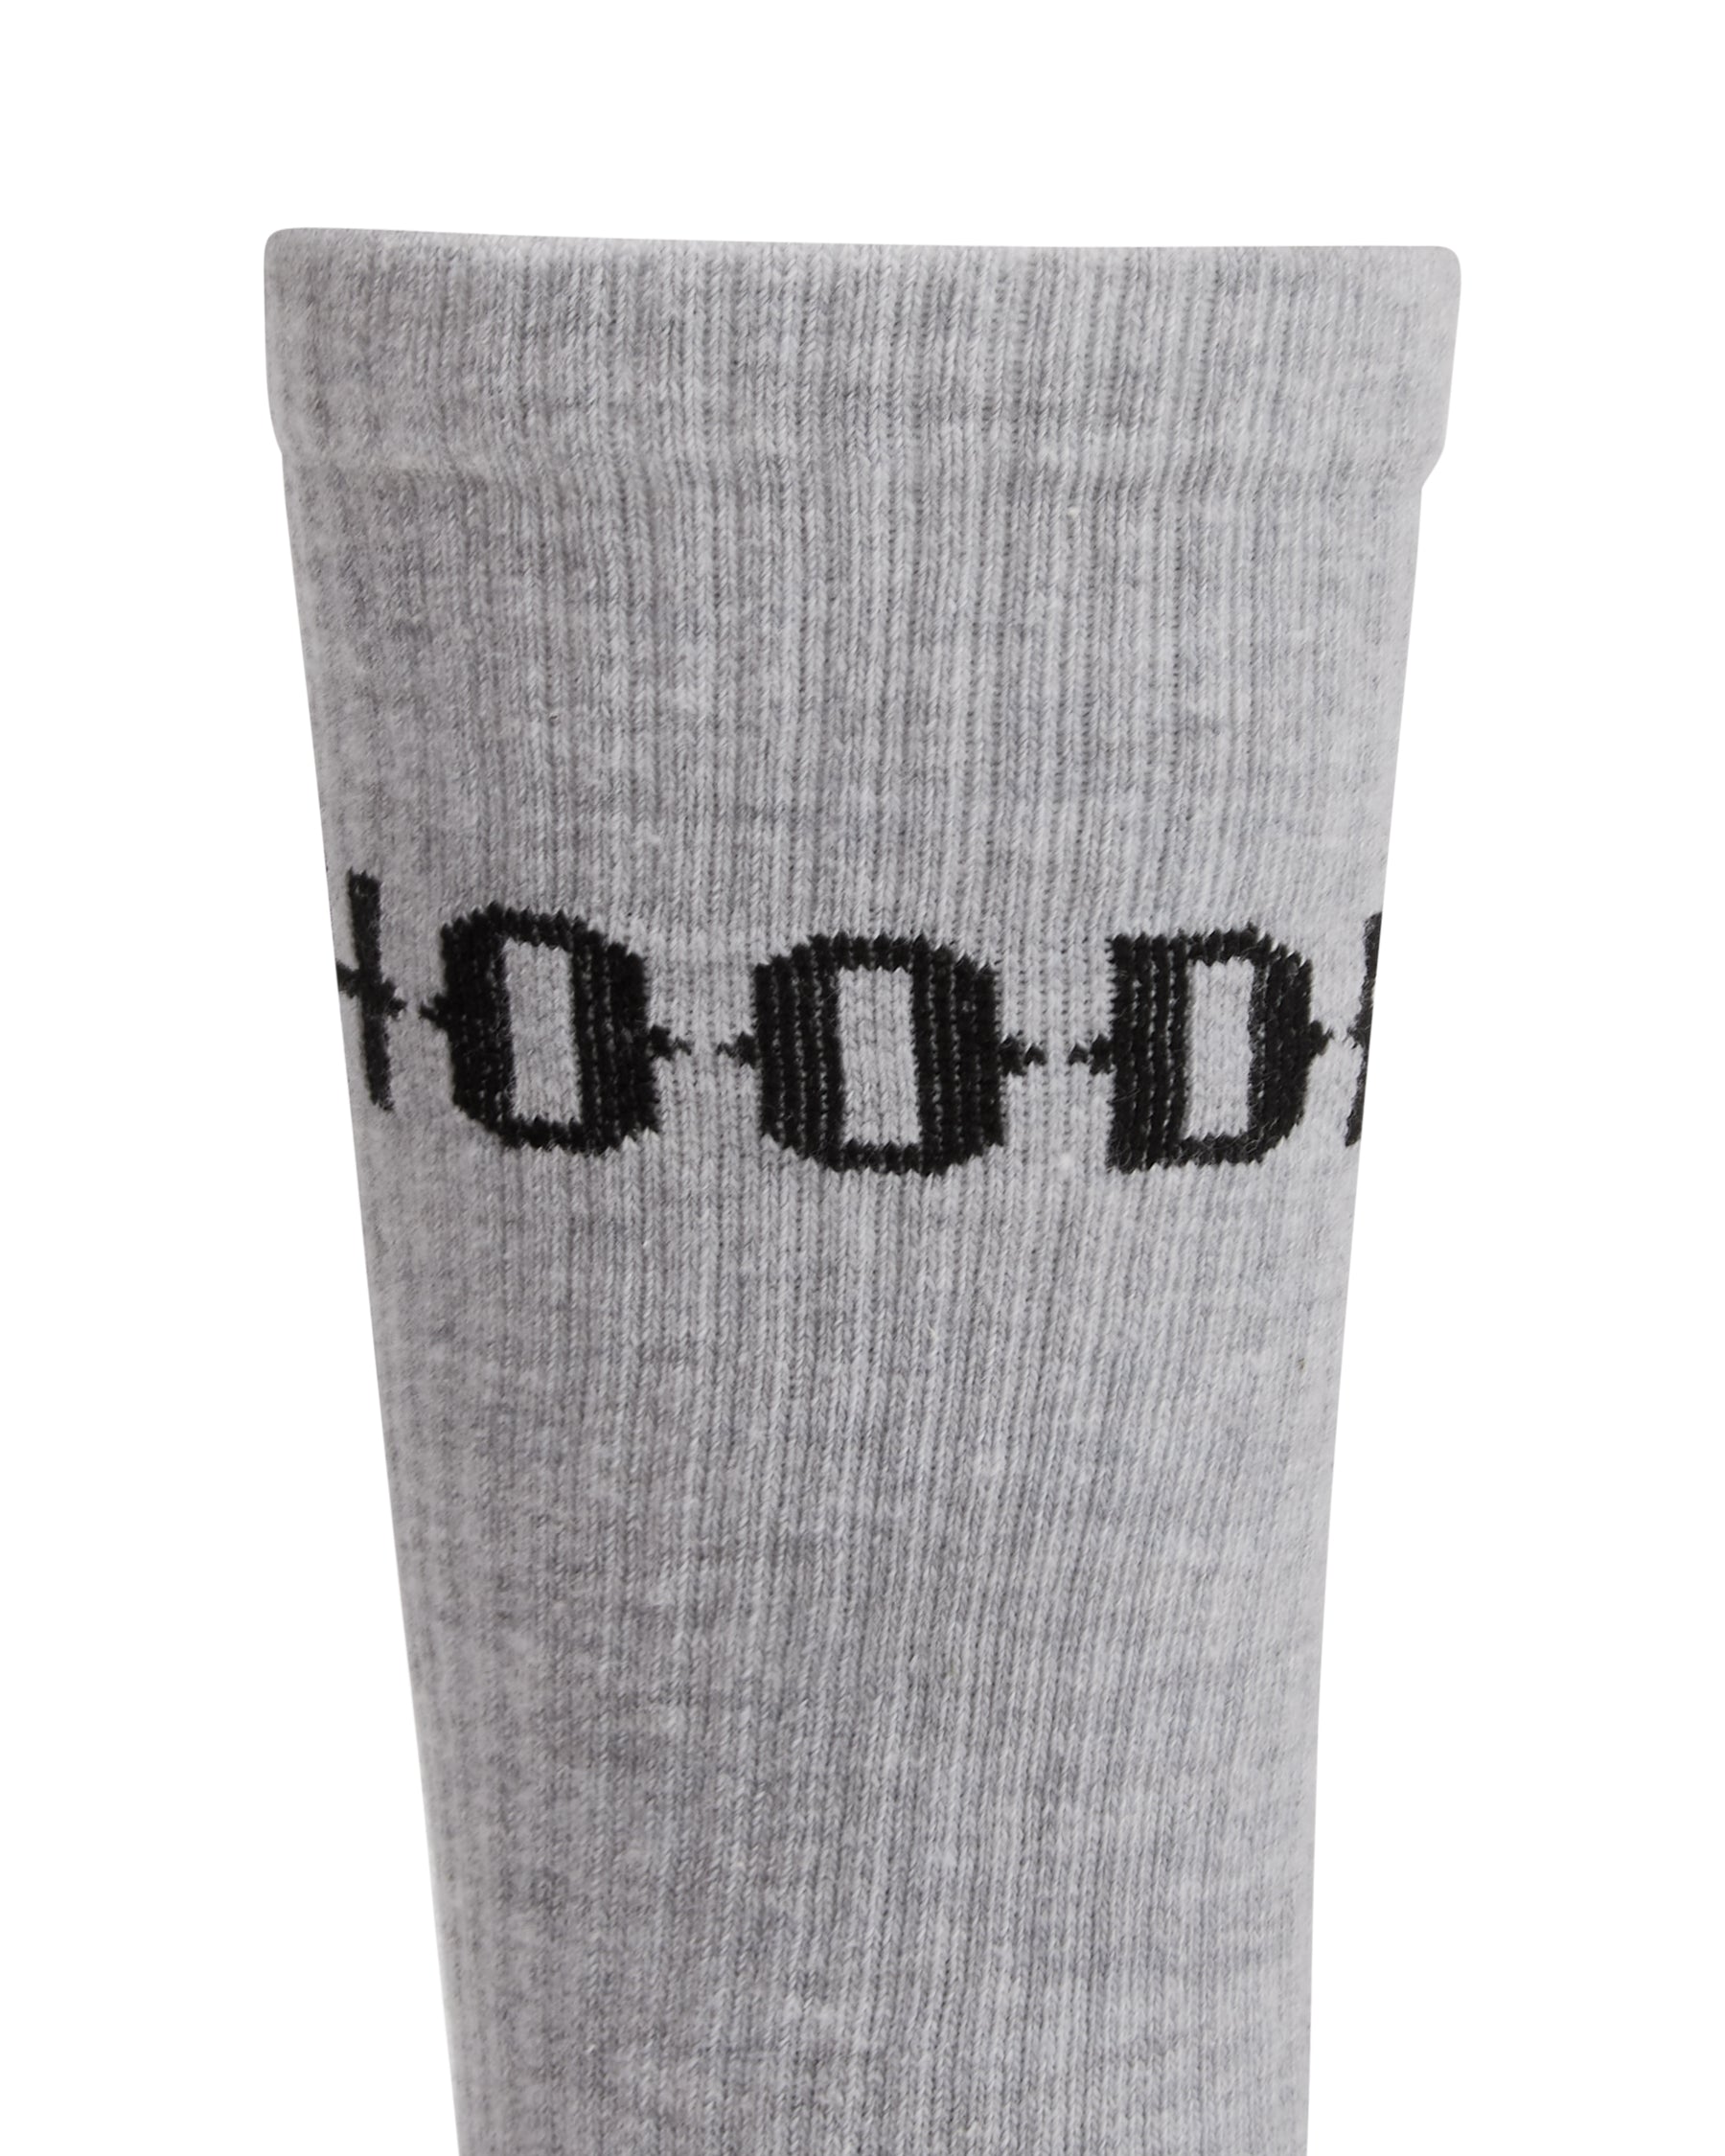 OG Core 3 Pack Crew Socks - Grey/White/Black